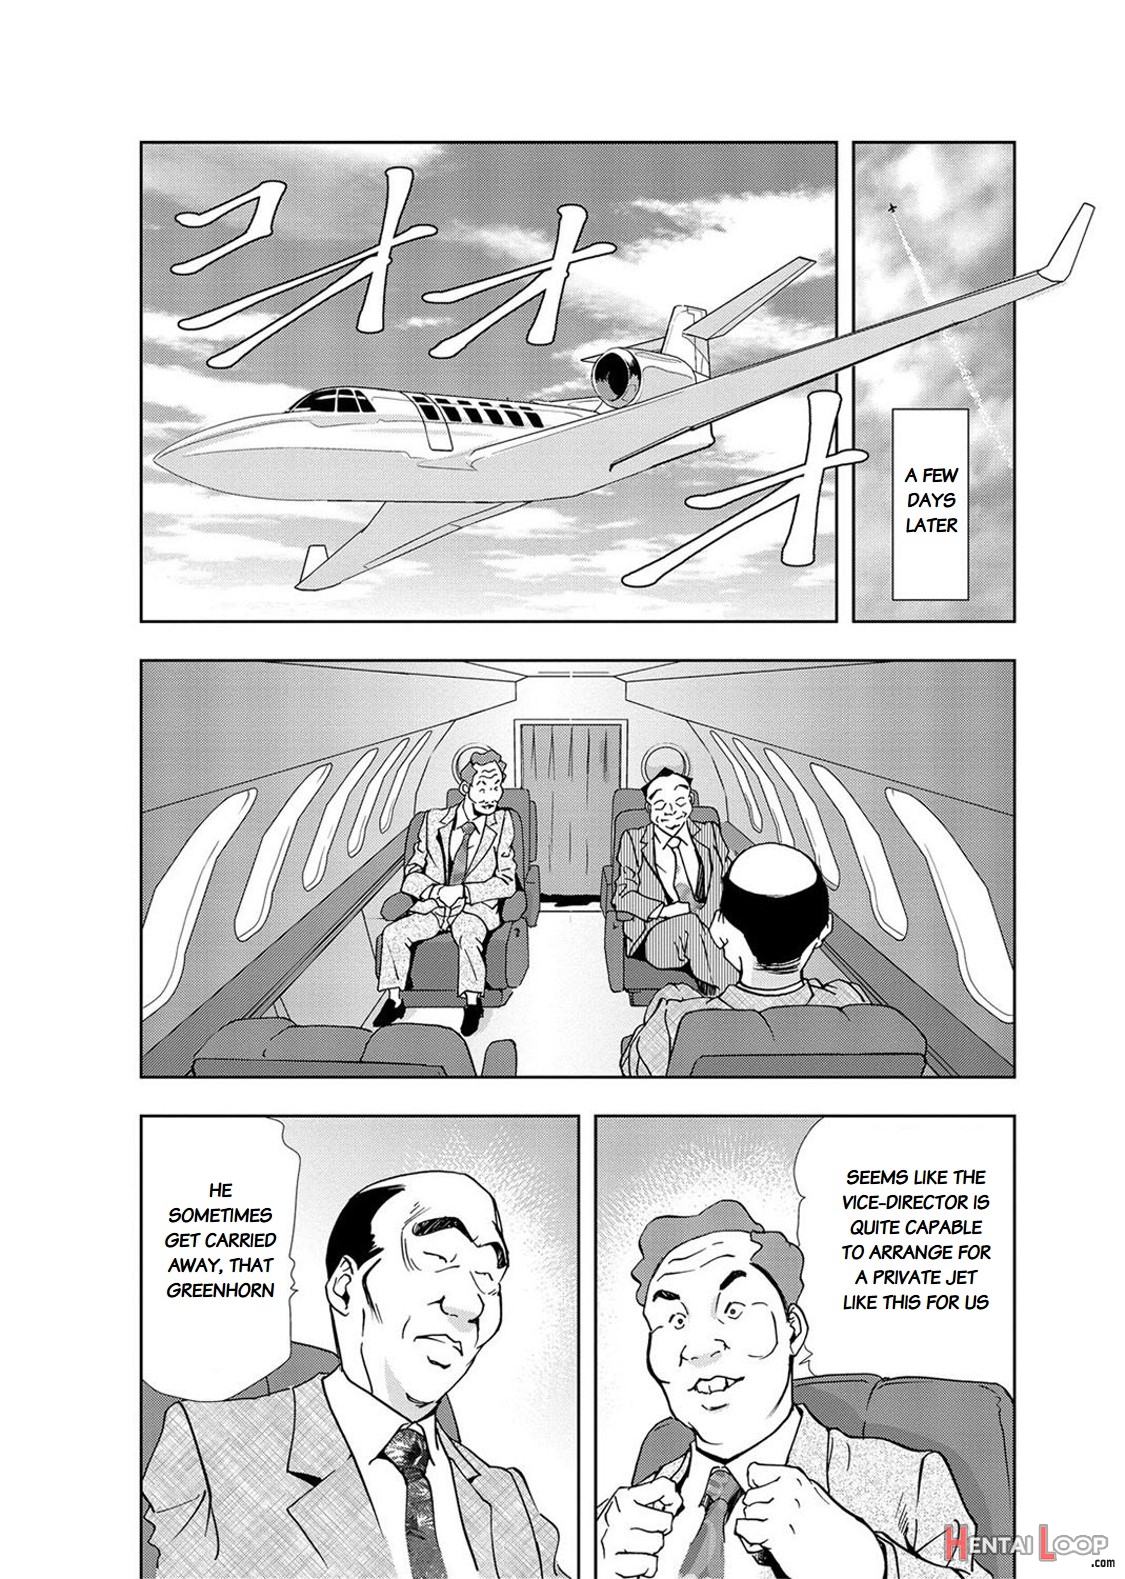 Nikuhisyo Yukiko Volume Iii To V Ch. 13-24 page 7